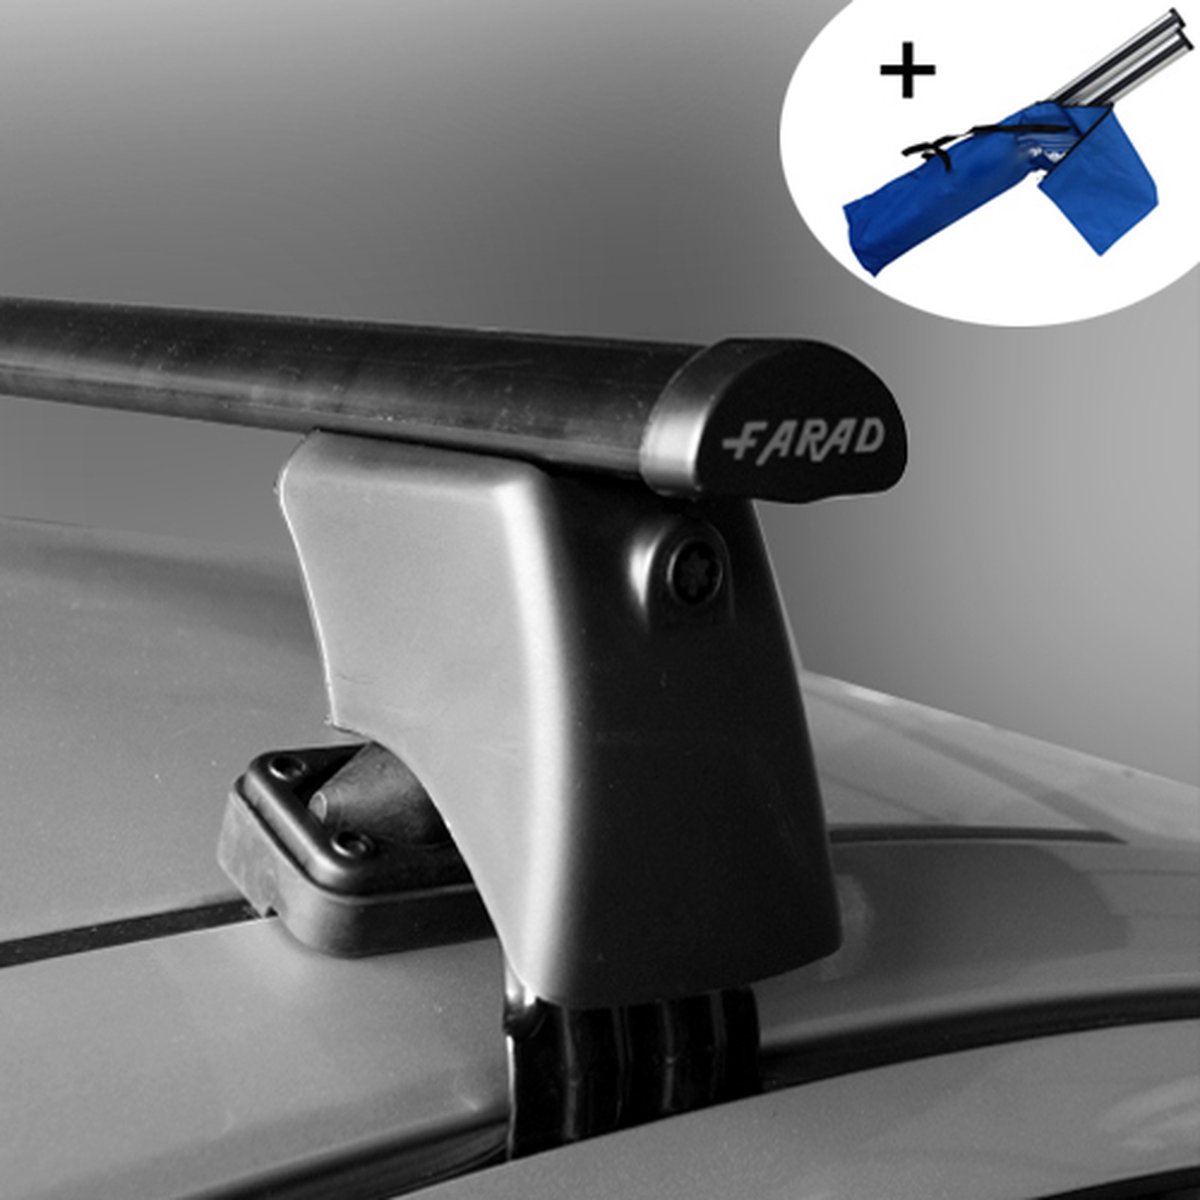 Dakdragers geschikt voor Kia Carens 5 deurs hatchback vanaf 2013 - Staal - inclusief dakdrager opbergtas